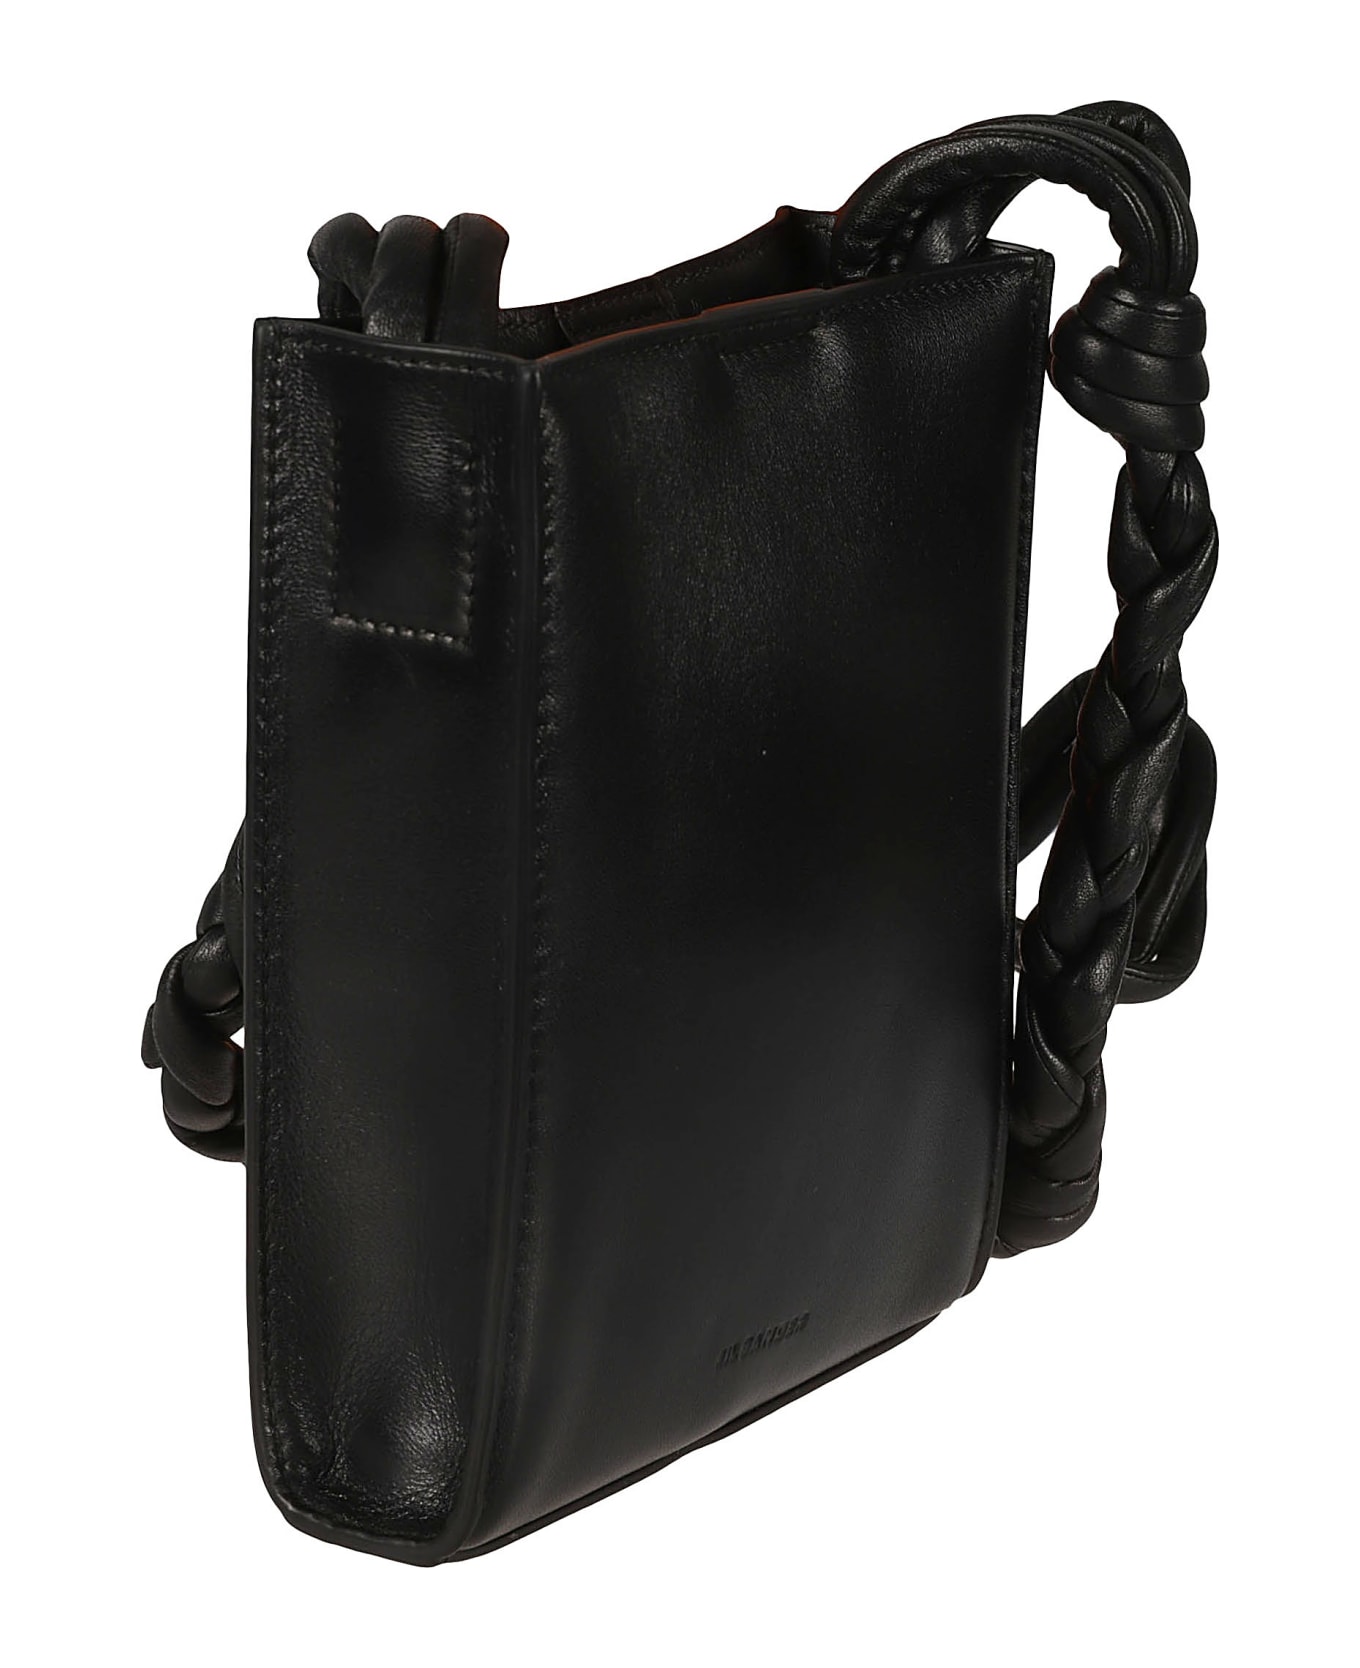 Jil Sander Tangle Shoulder Bag - Black